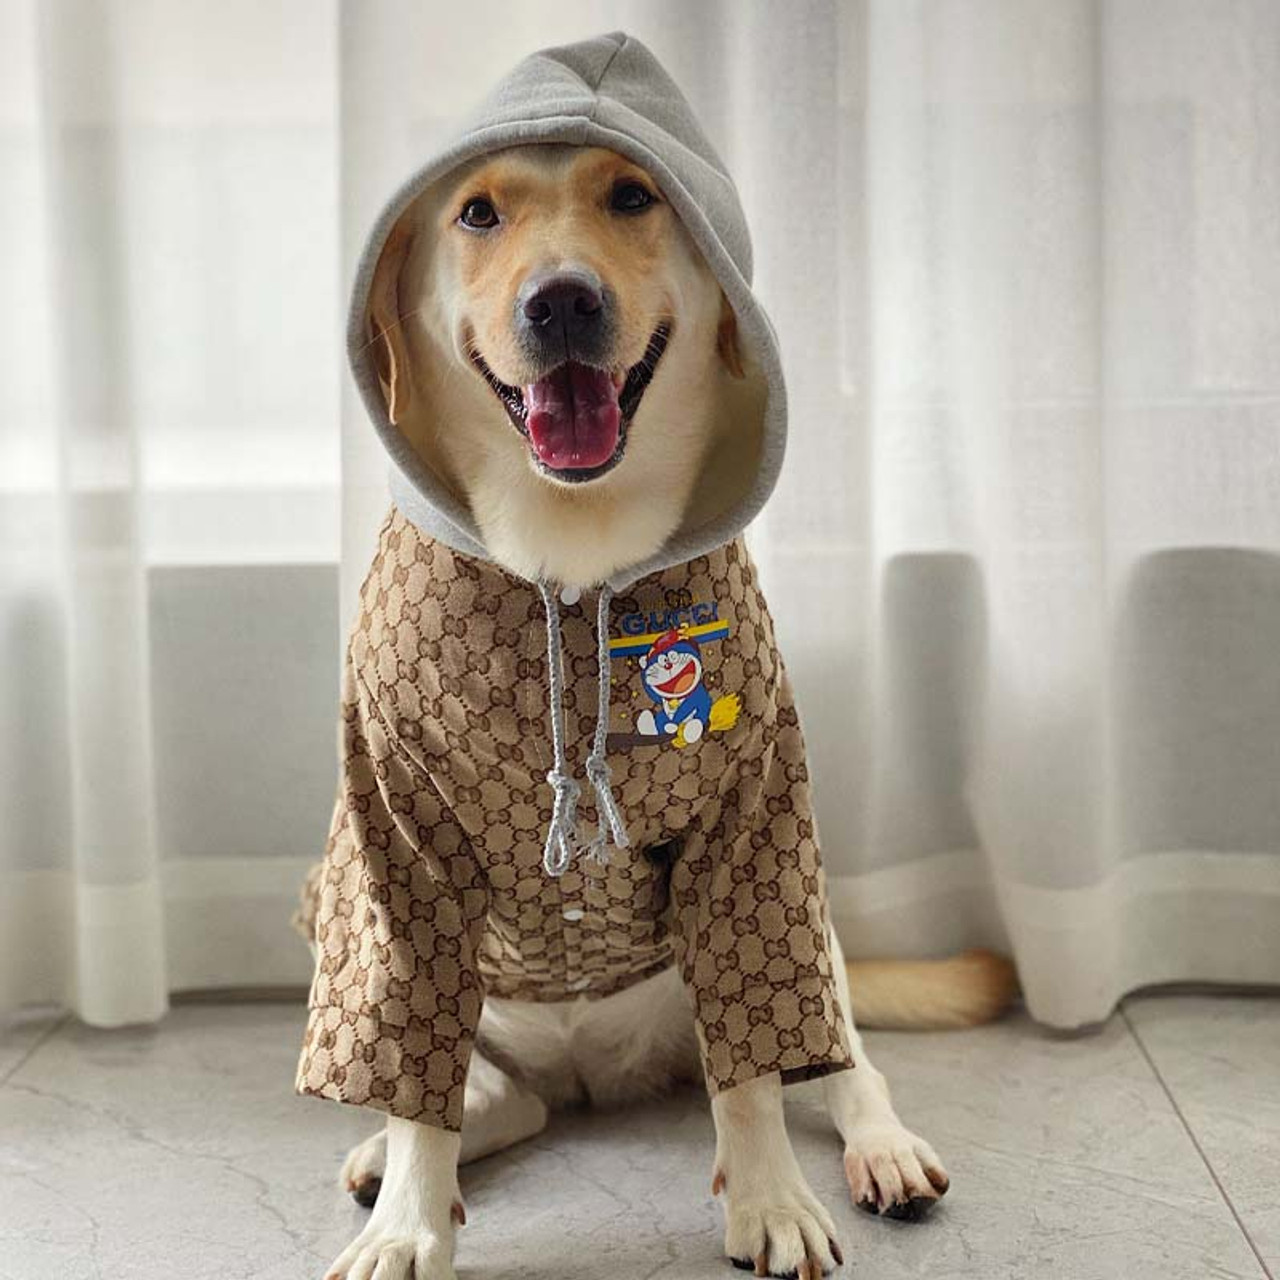 Large Dog Gucci Clothes Labrador Golden Retriever Thin Clothes